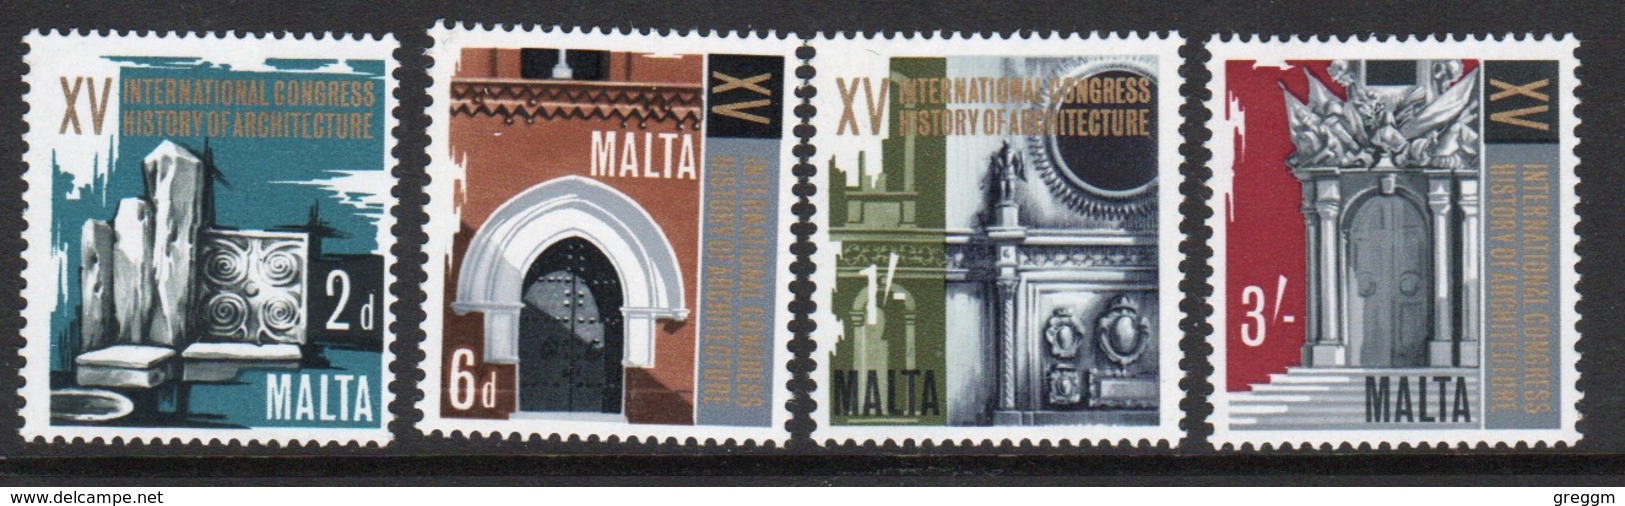 Malta 1967 Complete Set Of Stamps To Celebrate 15th Architectural Congress. - Malta